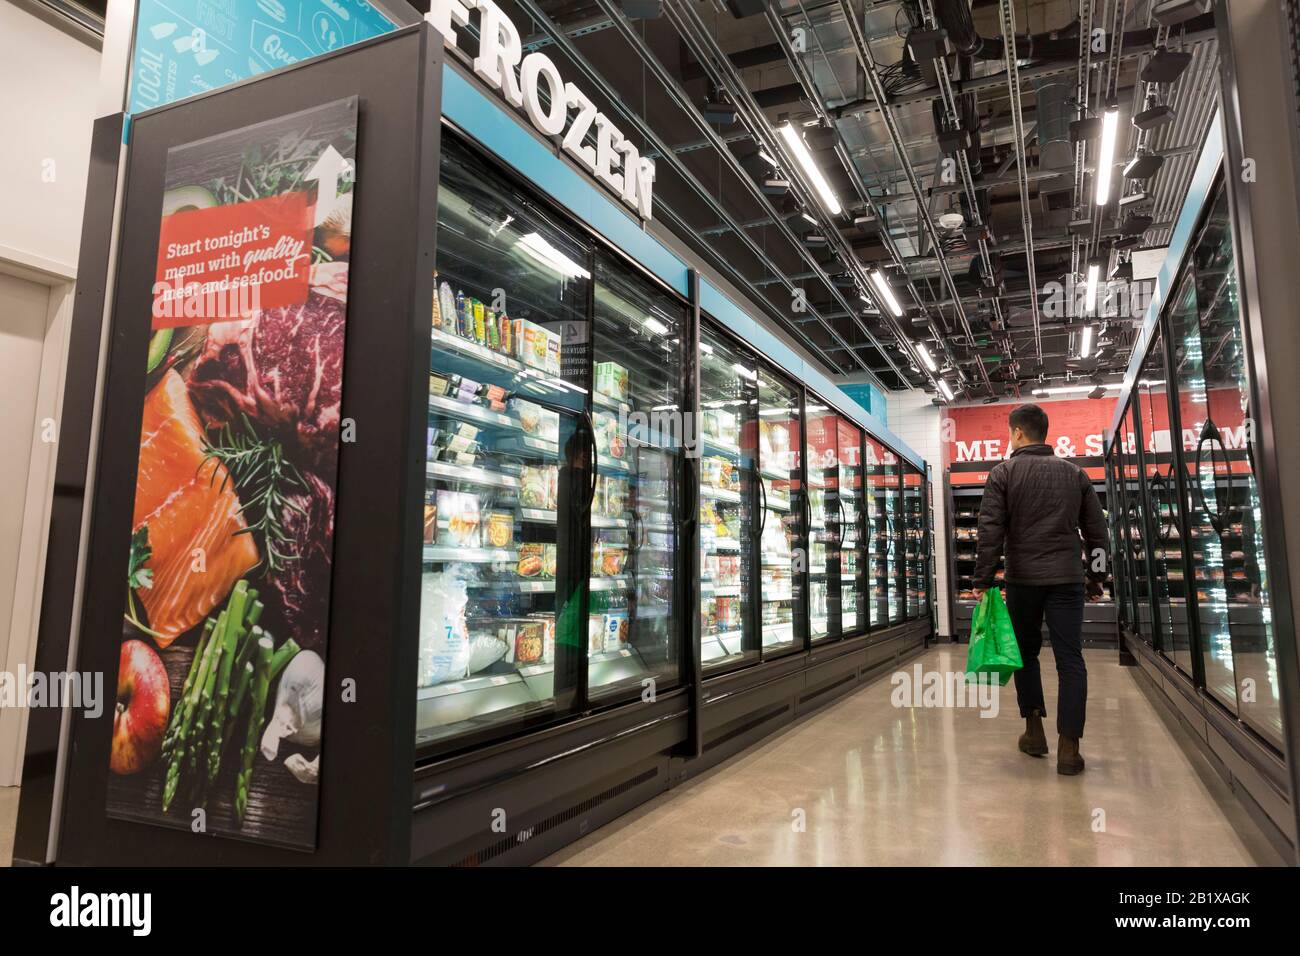 Am 27. Februar 2020 geht ein Kundengeschäft bei Amazon Ein  Lebensmittelgeschäft. Der erste große, kashierlose Supermarkt des  Technikunternehmens wurde Anfang der Woche im Viertel Capitol Hill in  Seattle eröffnet. Kunden scannen eine